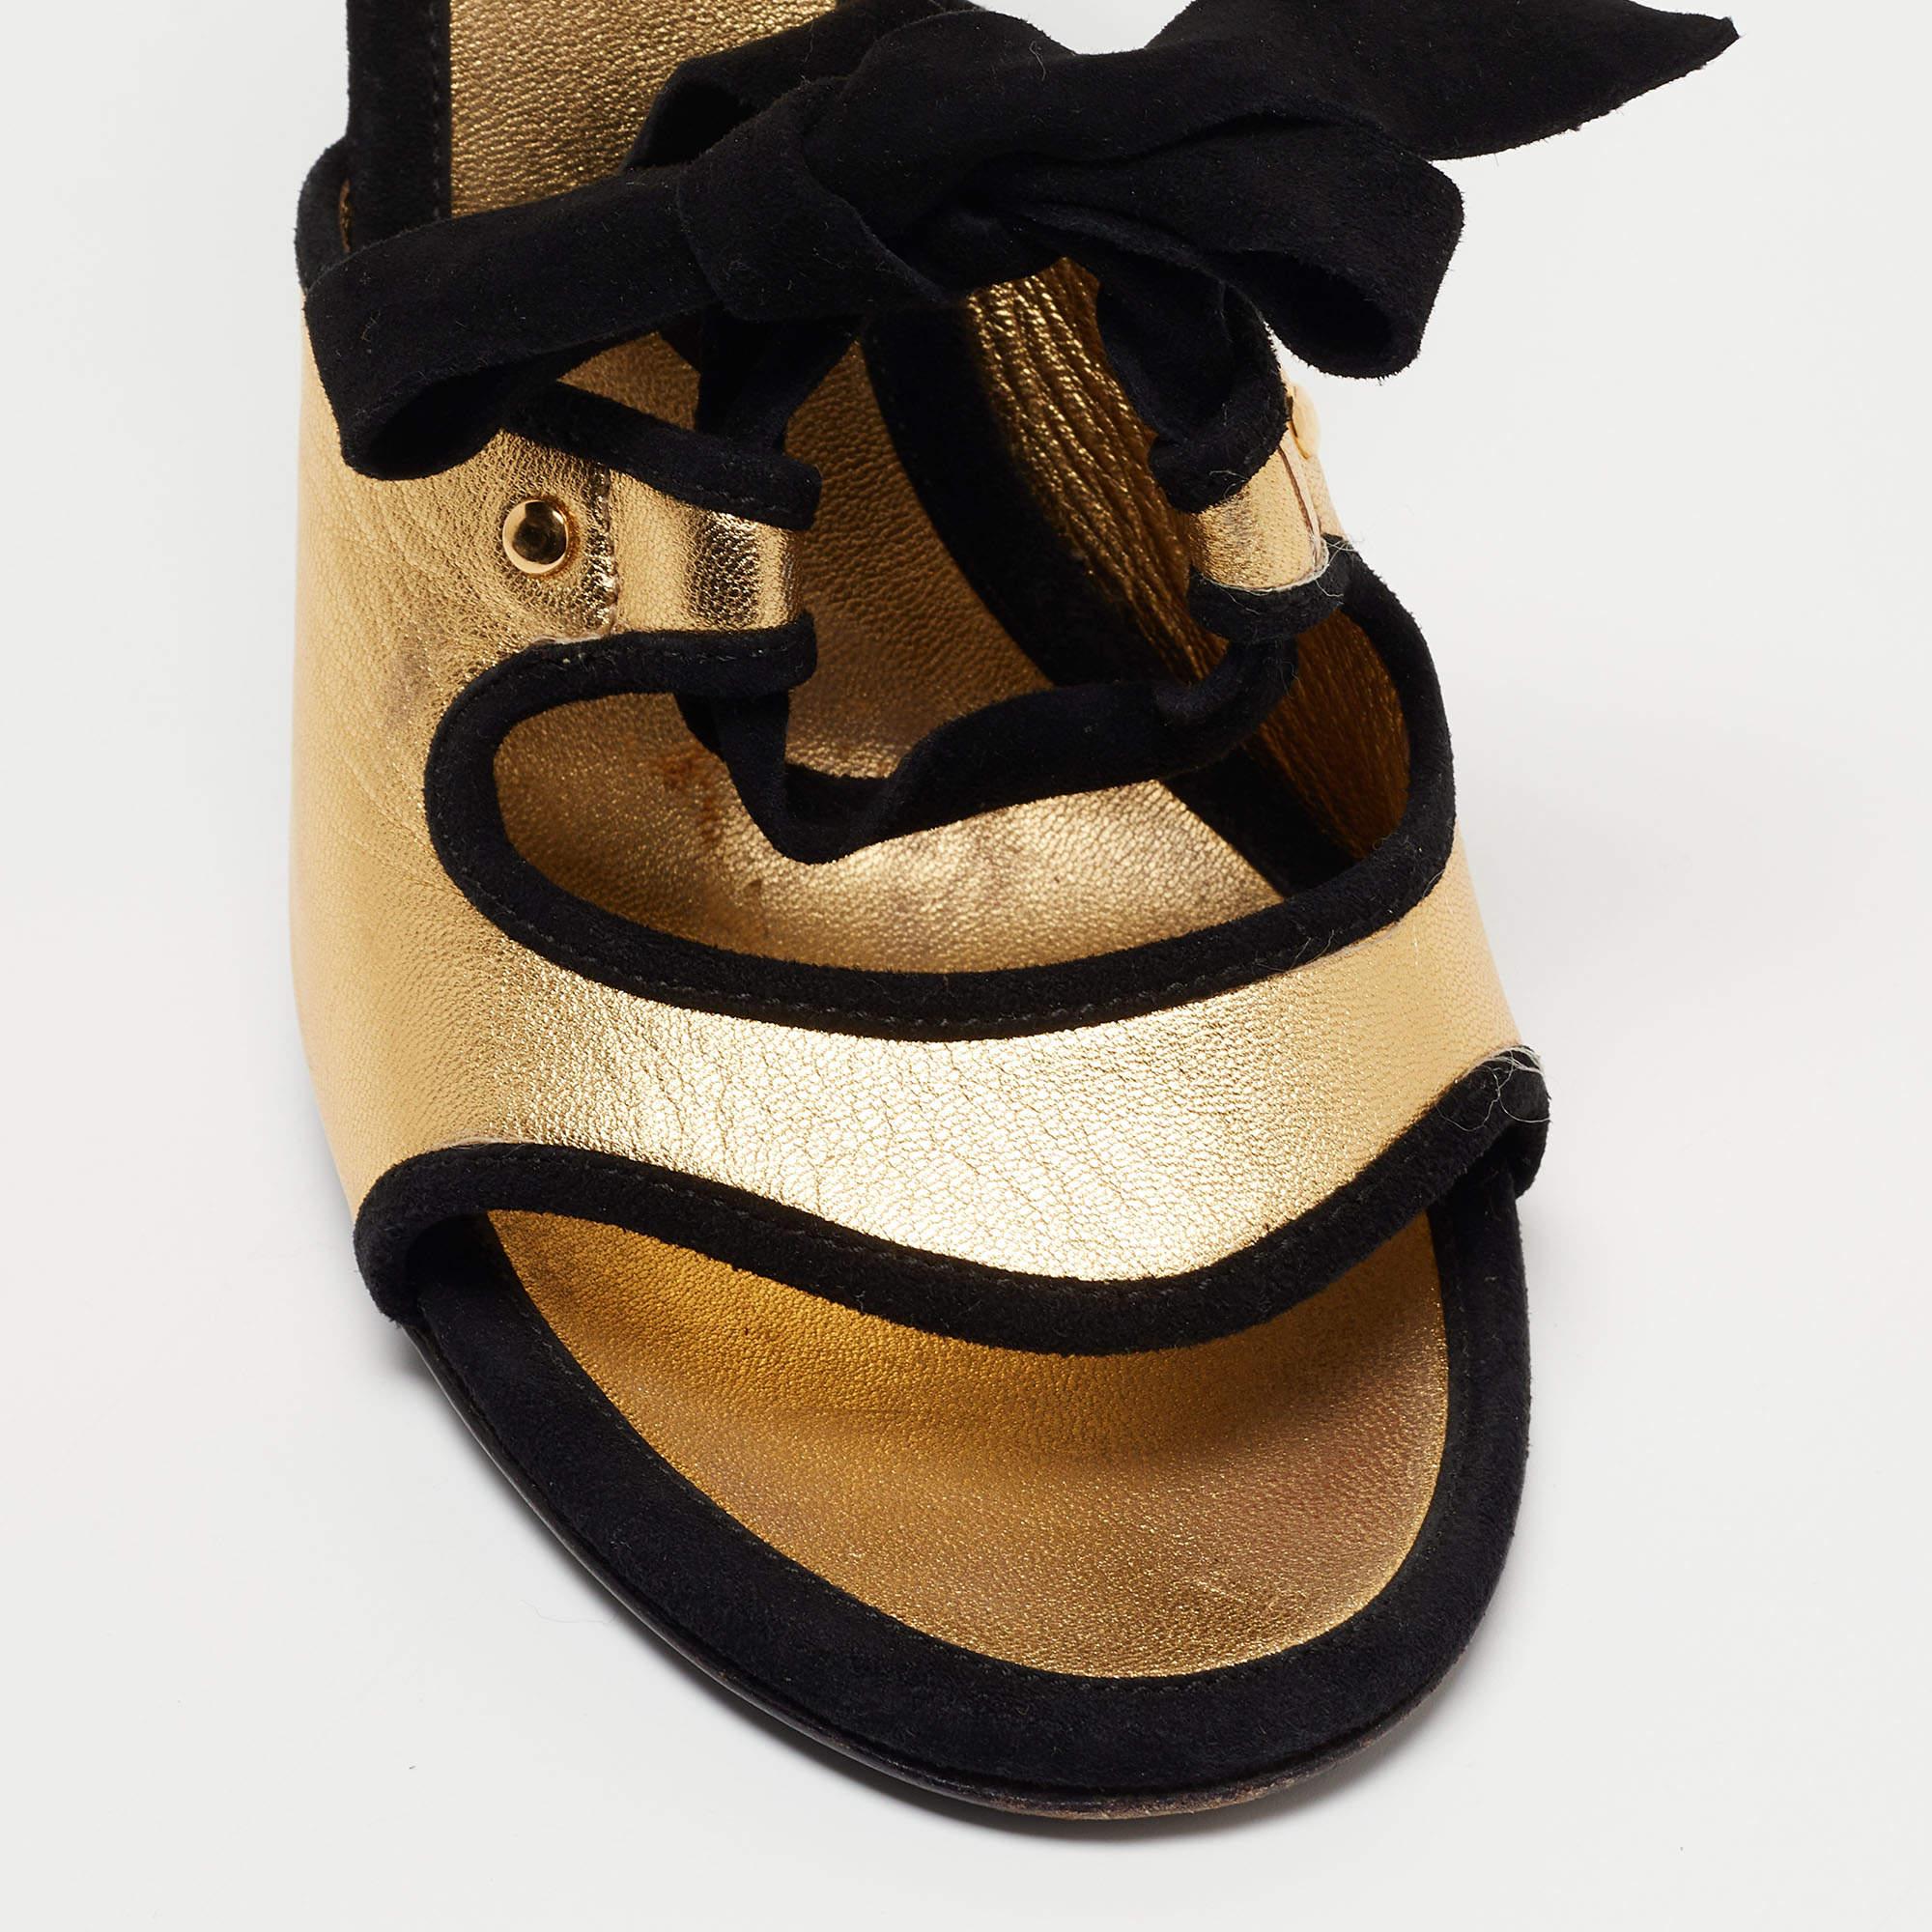 Prada Gold/Black Leather and Suede Floral Ankle Strap Sandals Size 39 (Sandales à talons en cuir et en daim avec fleurs) 1